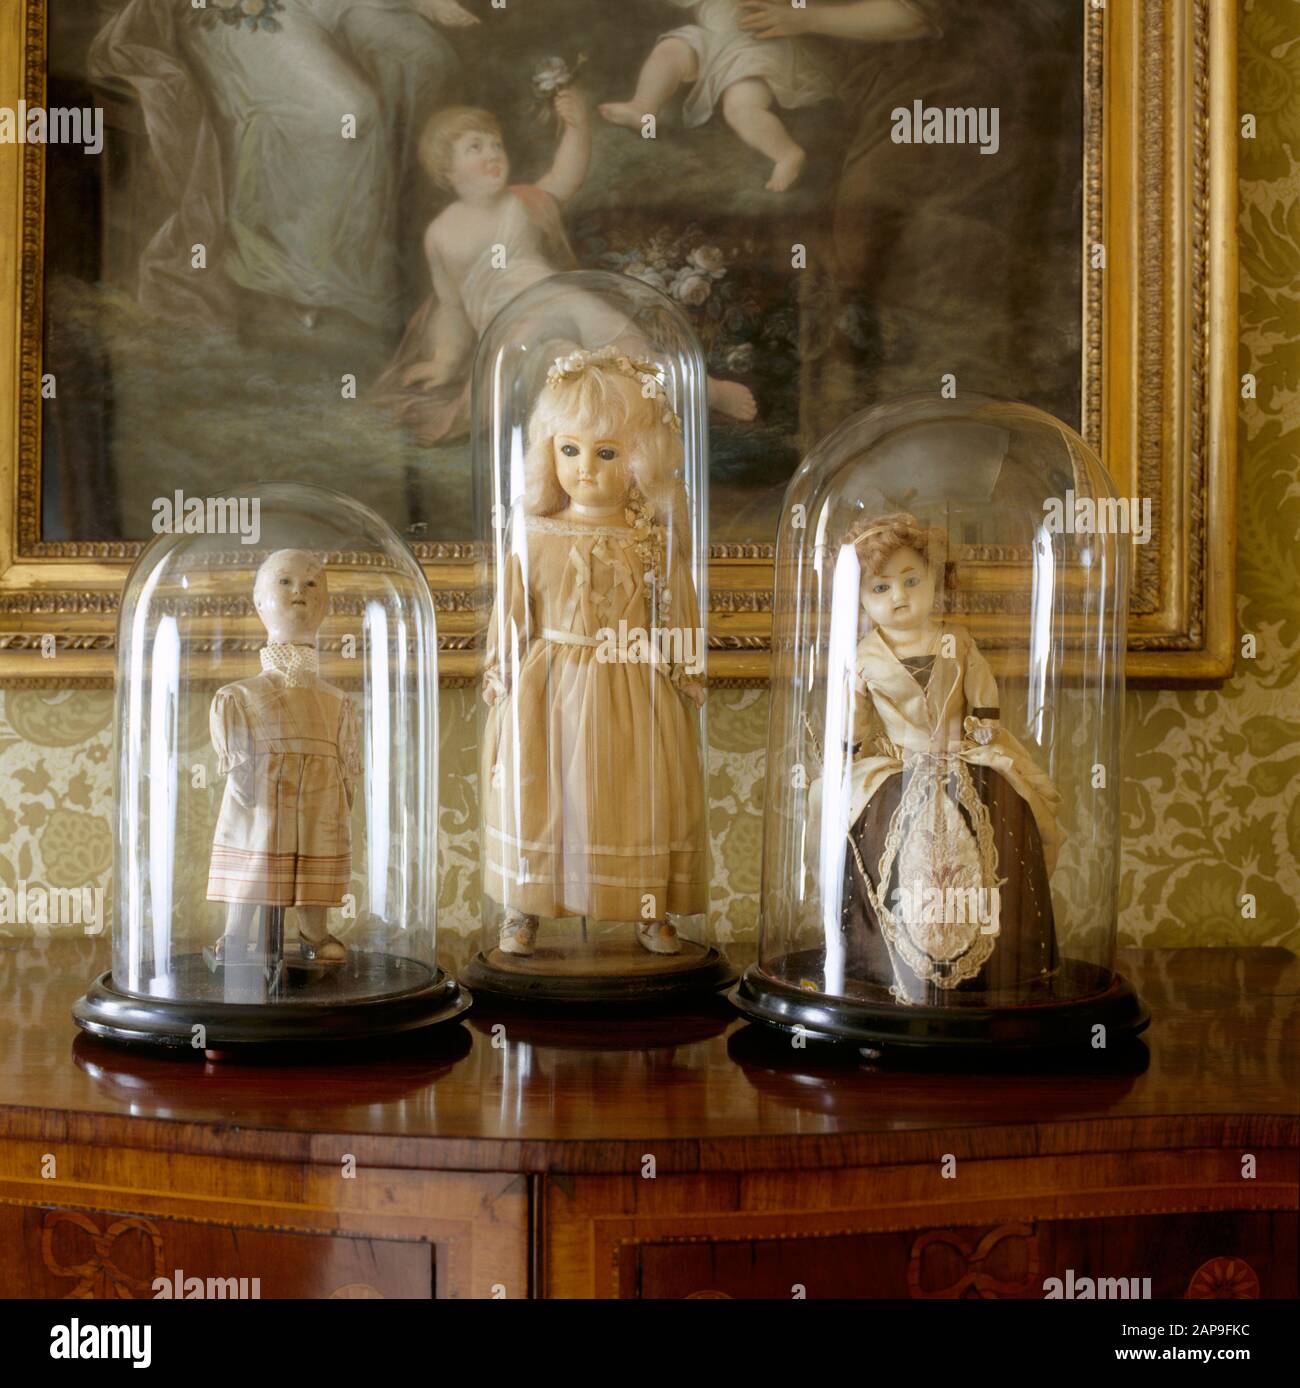 Nahansicht von drei Puppen des achtzehnten/neunzehnten Jahrhunderts in Glas-Vitrinen auf der Landungsfläche des State Bedroom am Clevedon Court. Stockfoto